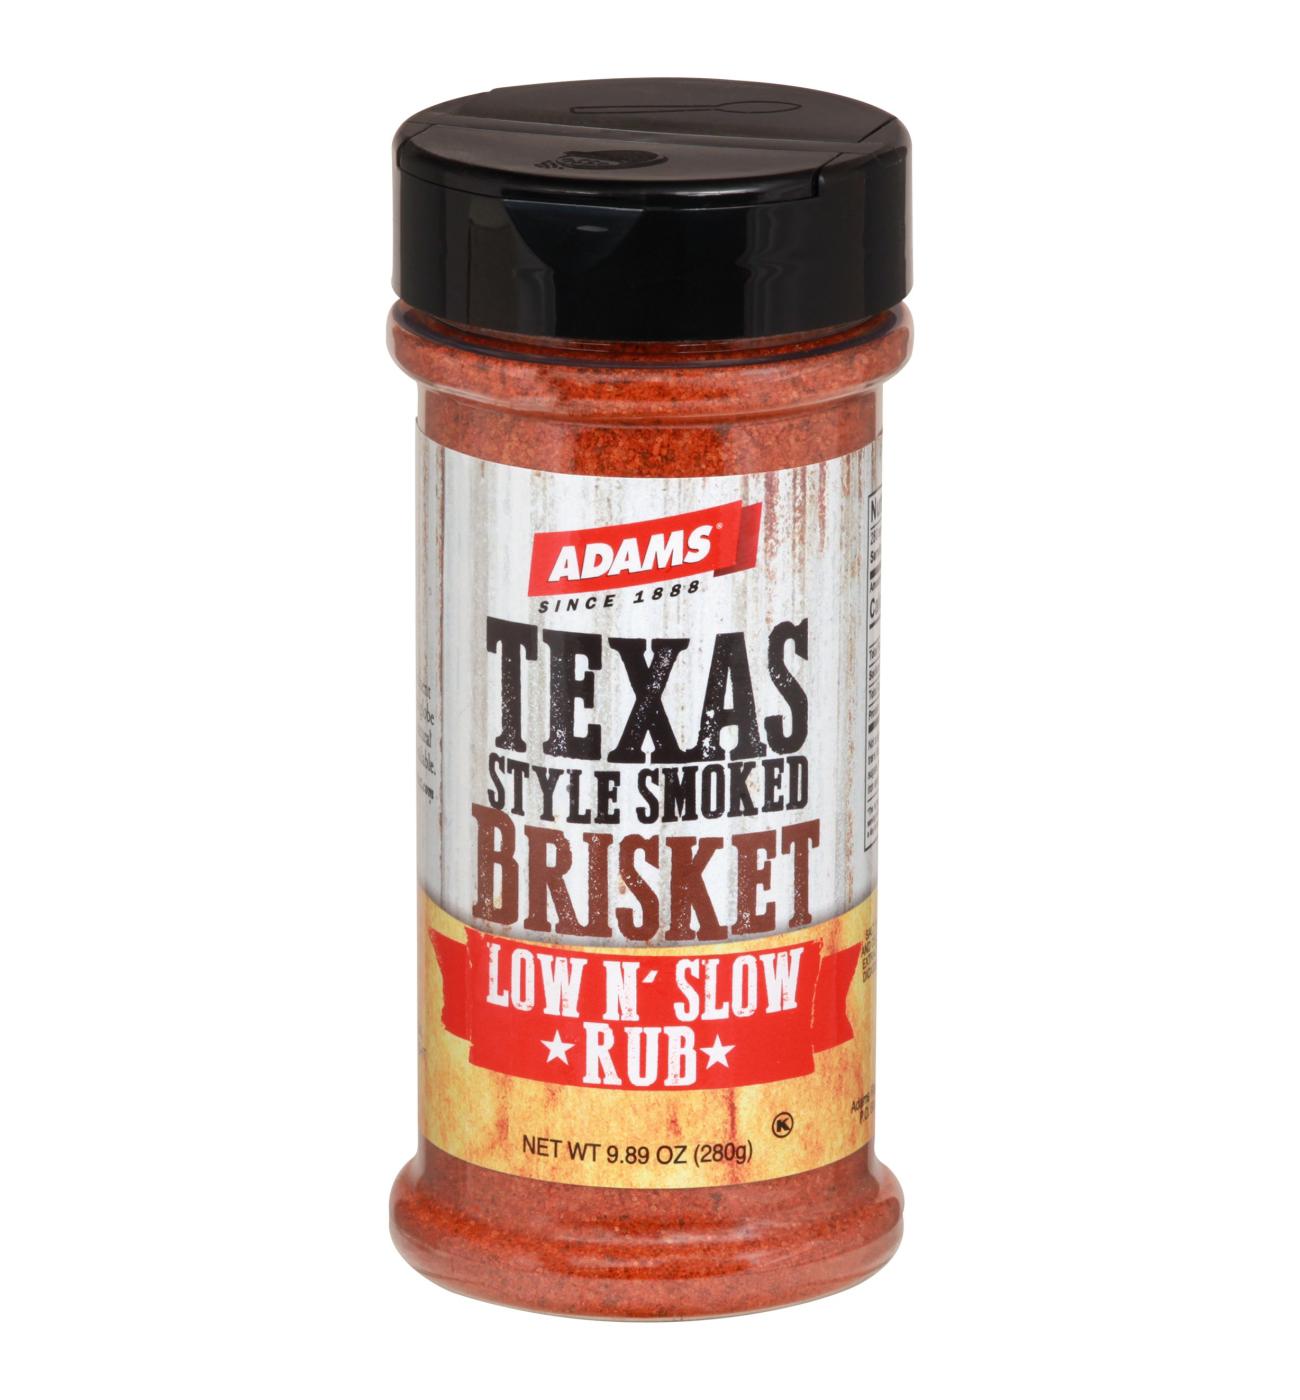 Adams Texas Style Smoked Brisket Rub; image 1 of 2